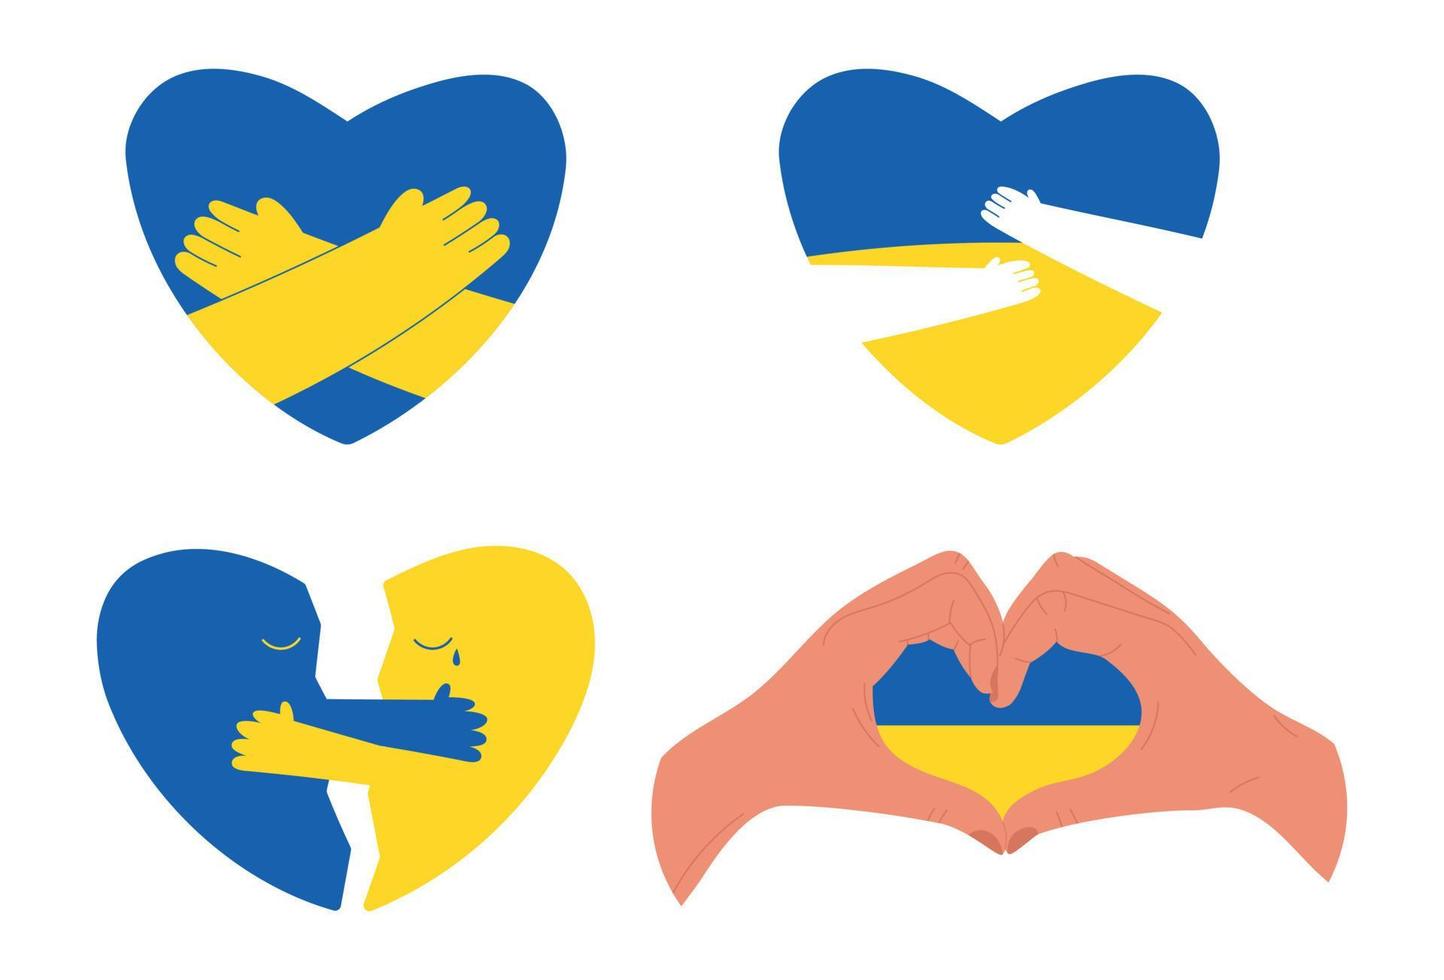 conjunto de corações nas cores da bandeira ucraniana abraçando e mostrando amor e apoio, ilustração vetorial plana isolada em branco. conceitos de paz e ajuda humanitária durante a guerra na ucrânia. vetor